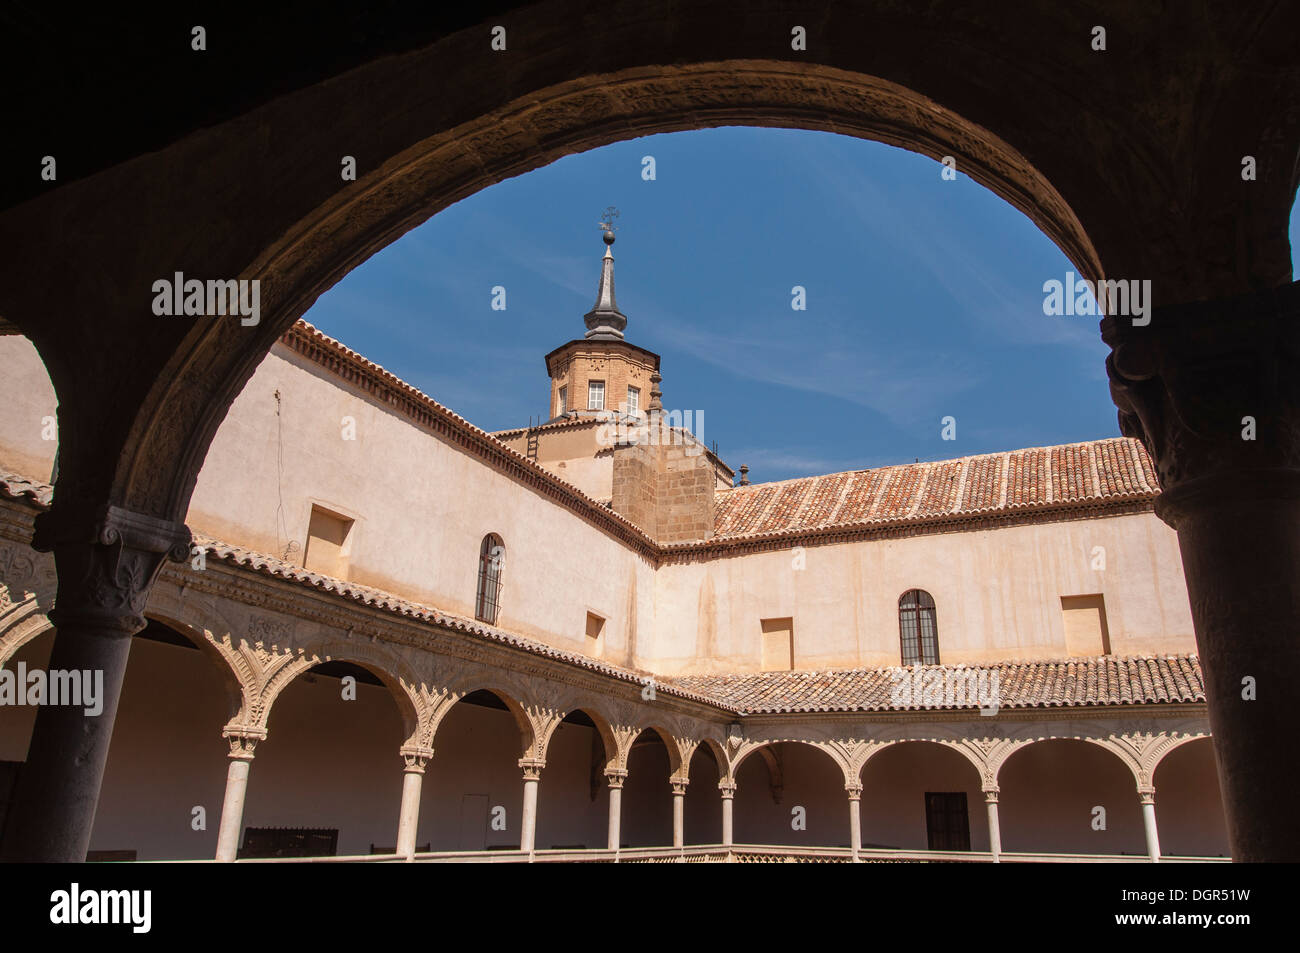 El Museo de Santa Cruz es un edificio del s. XVI de la ciudad de Toledo, Castilla la Mancha, España Stock Photo